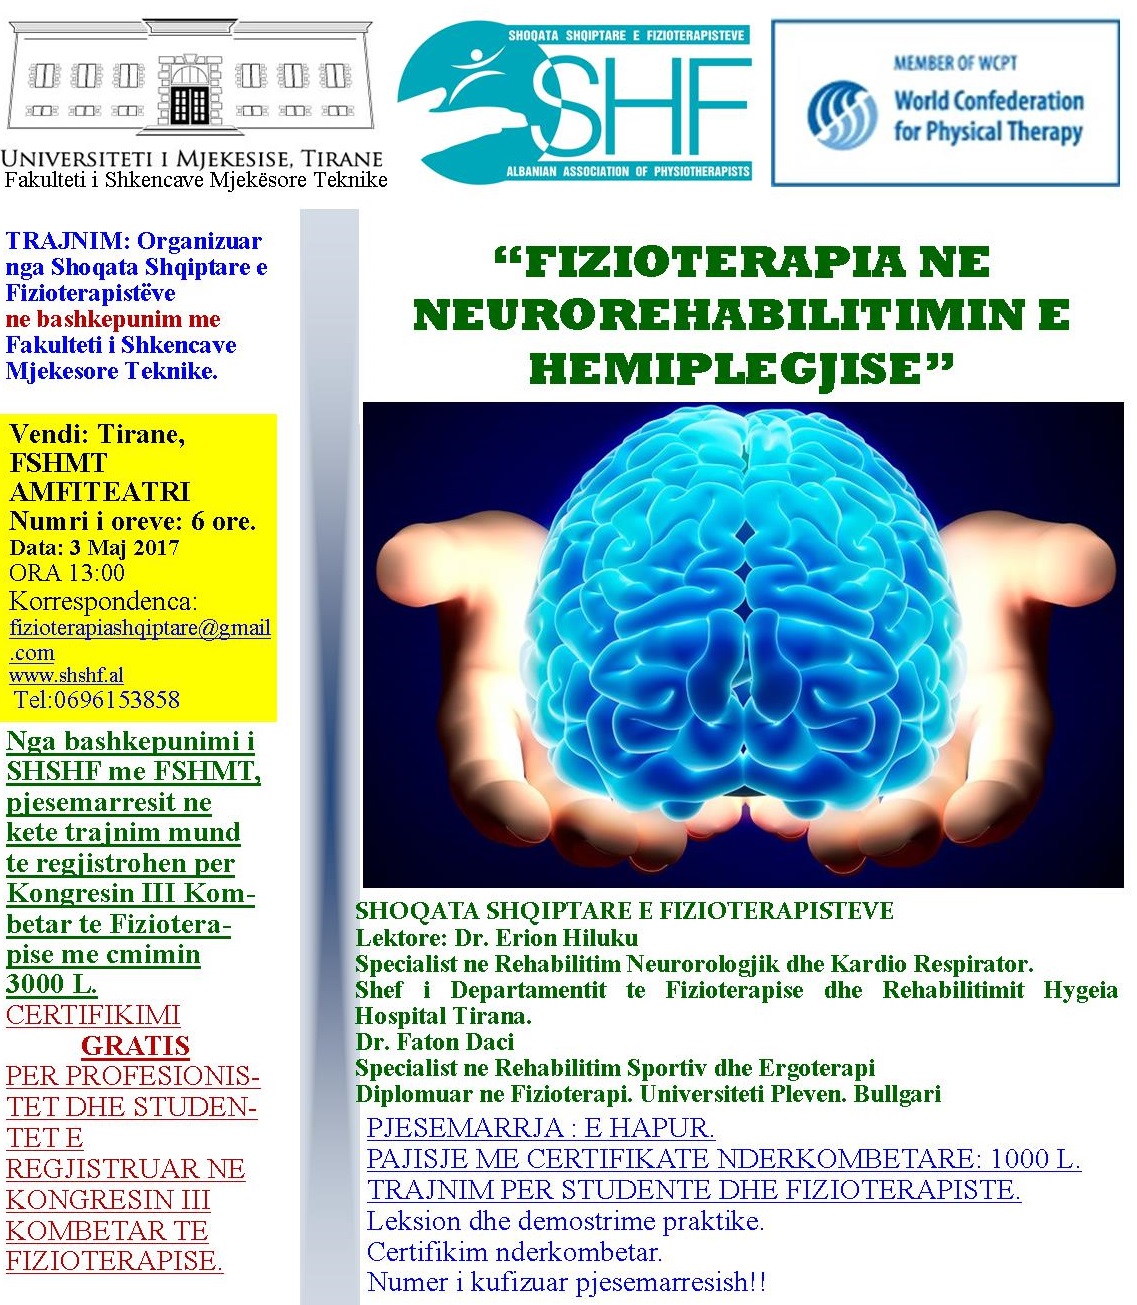 Fakulteti i Shkencave Mjekësore Teknike në bashkëpunim me Shoqatën Shqiptare të Fizioterapistëve organizon, më datë 3 maj 2017, trajnimin me titull: “Fizioterapia në Neurorehabilitimin e Hemiplegjisë”.